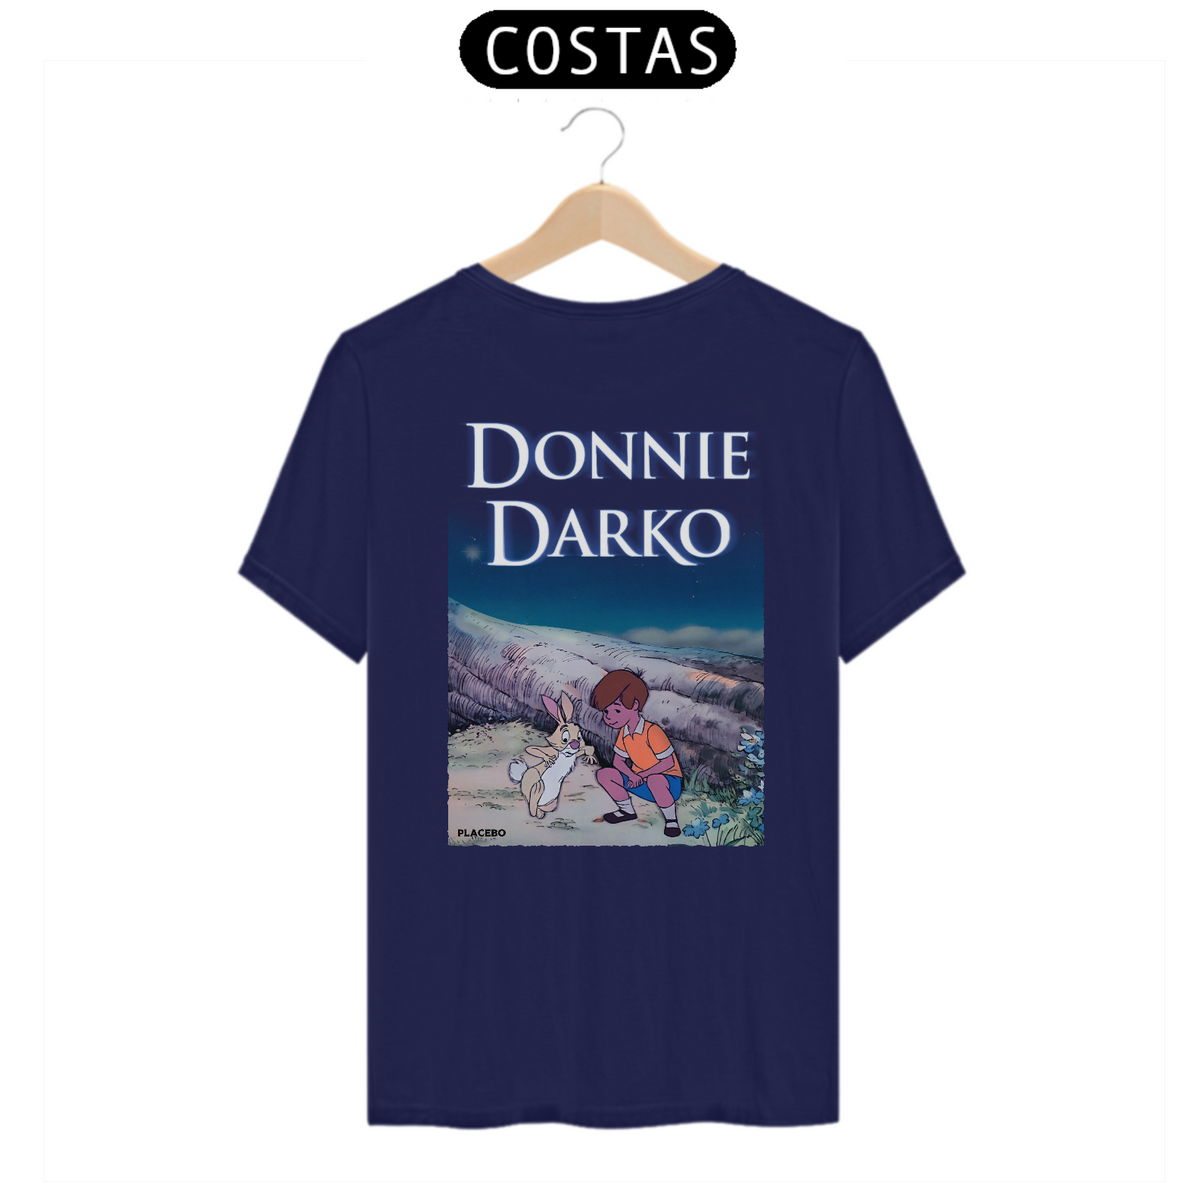 Nome do produto: Donnie darko